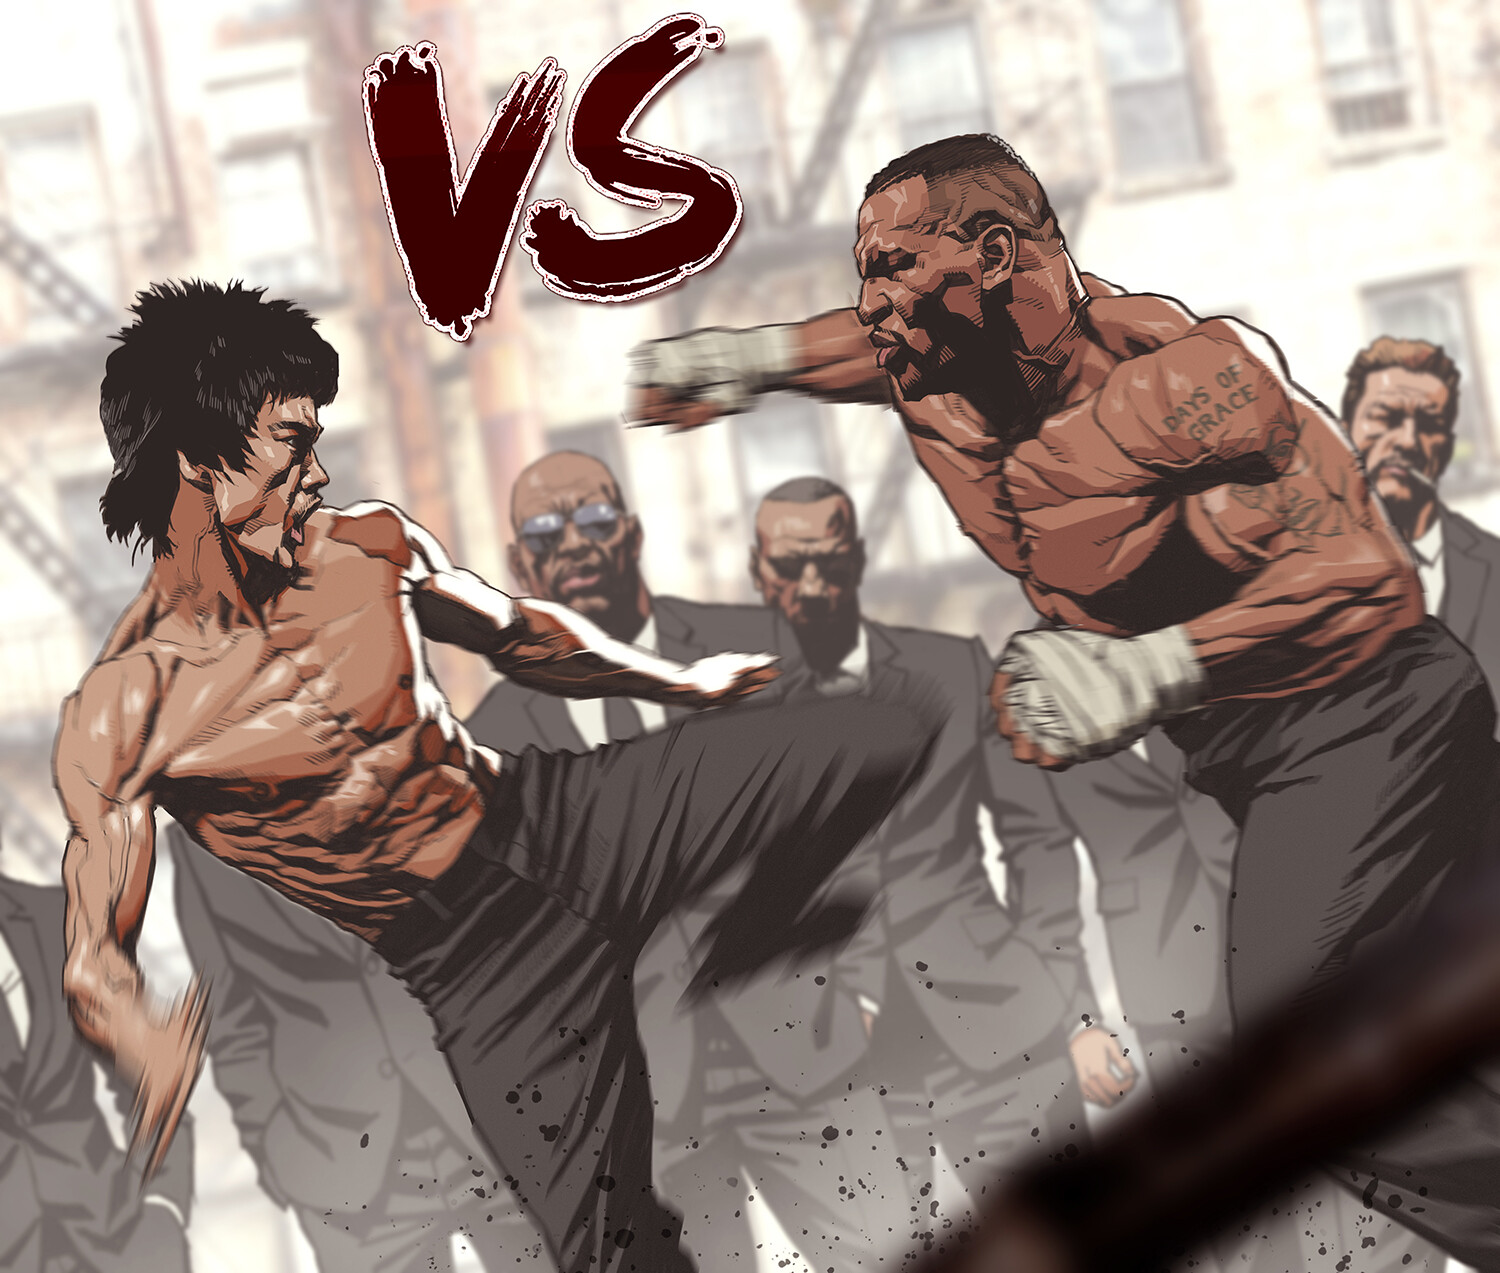 ArtStation - Bruce Lee VS Mike Tyson